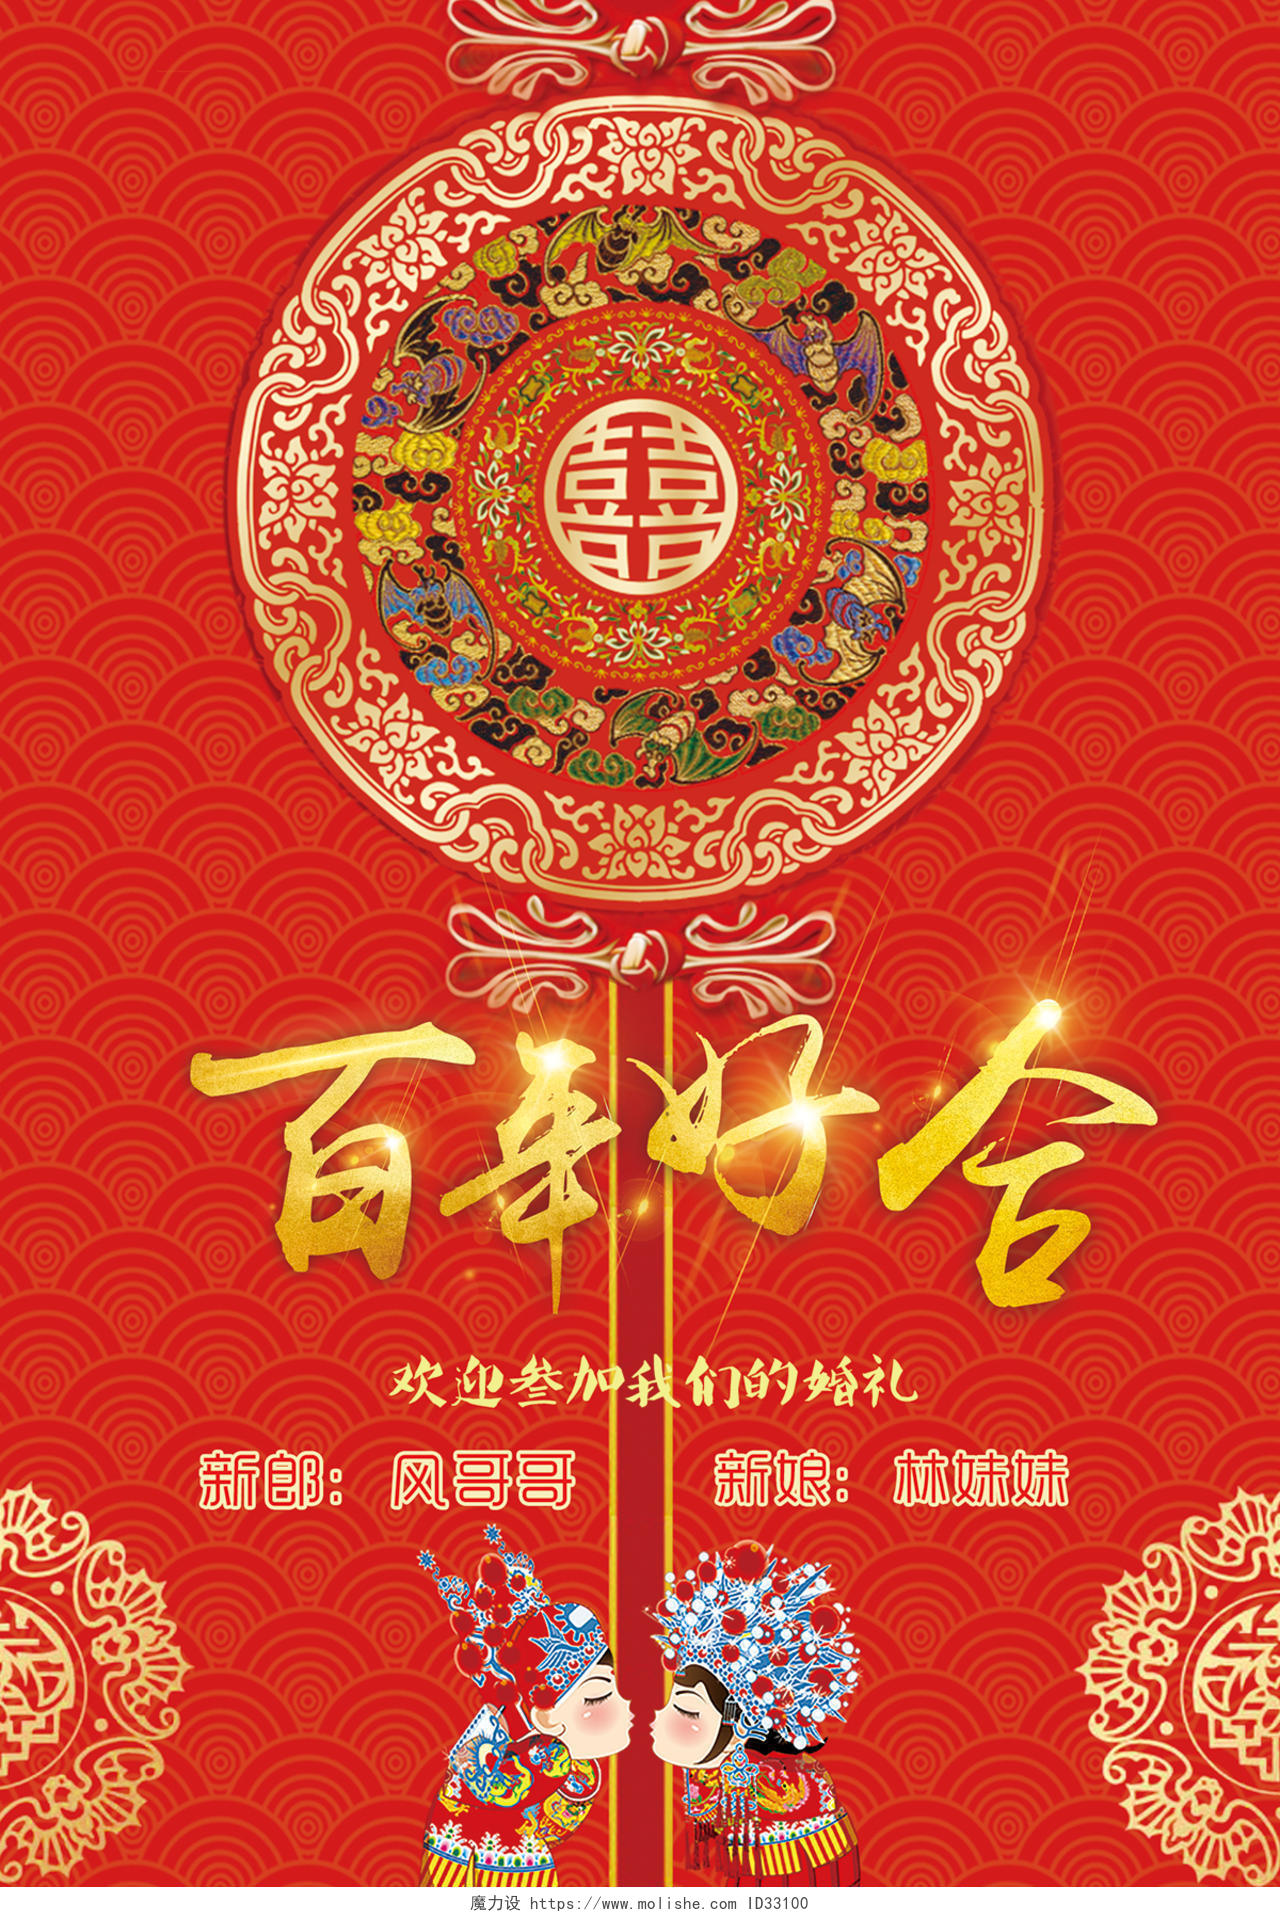 中国风百年好合婚礼婚庆结婚迎宾宣传海报